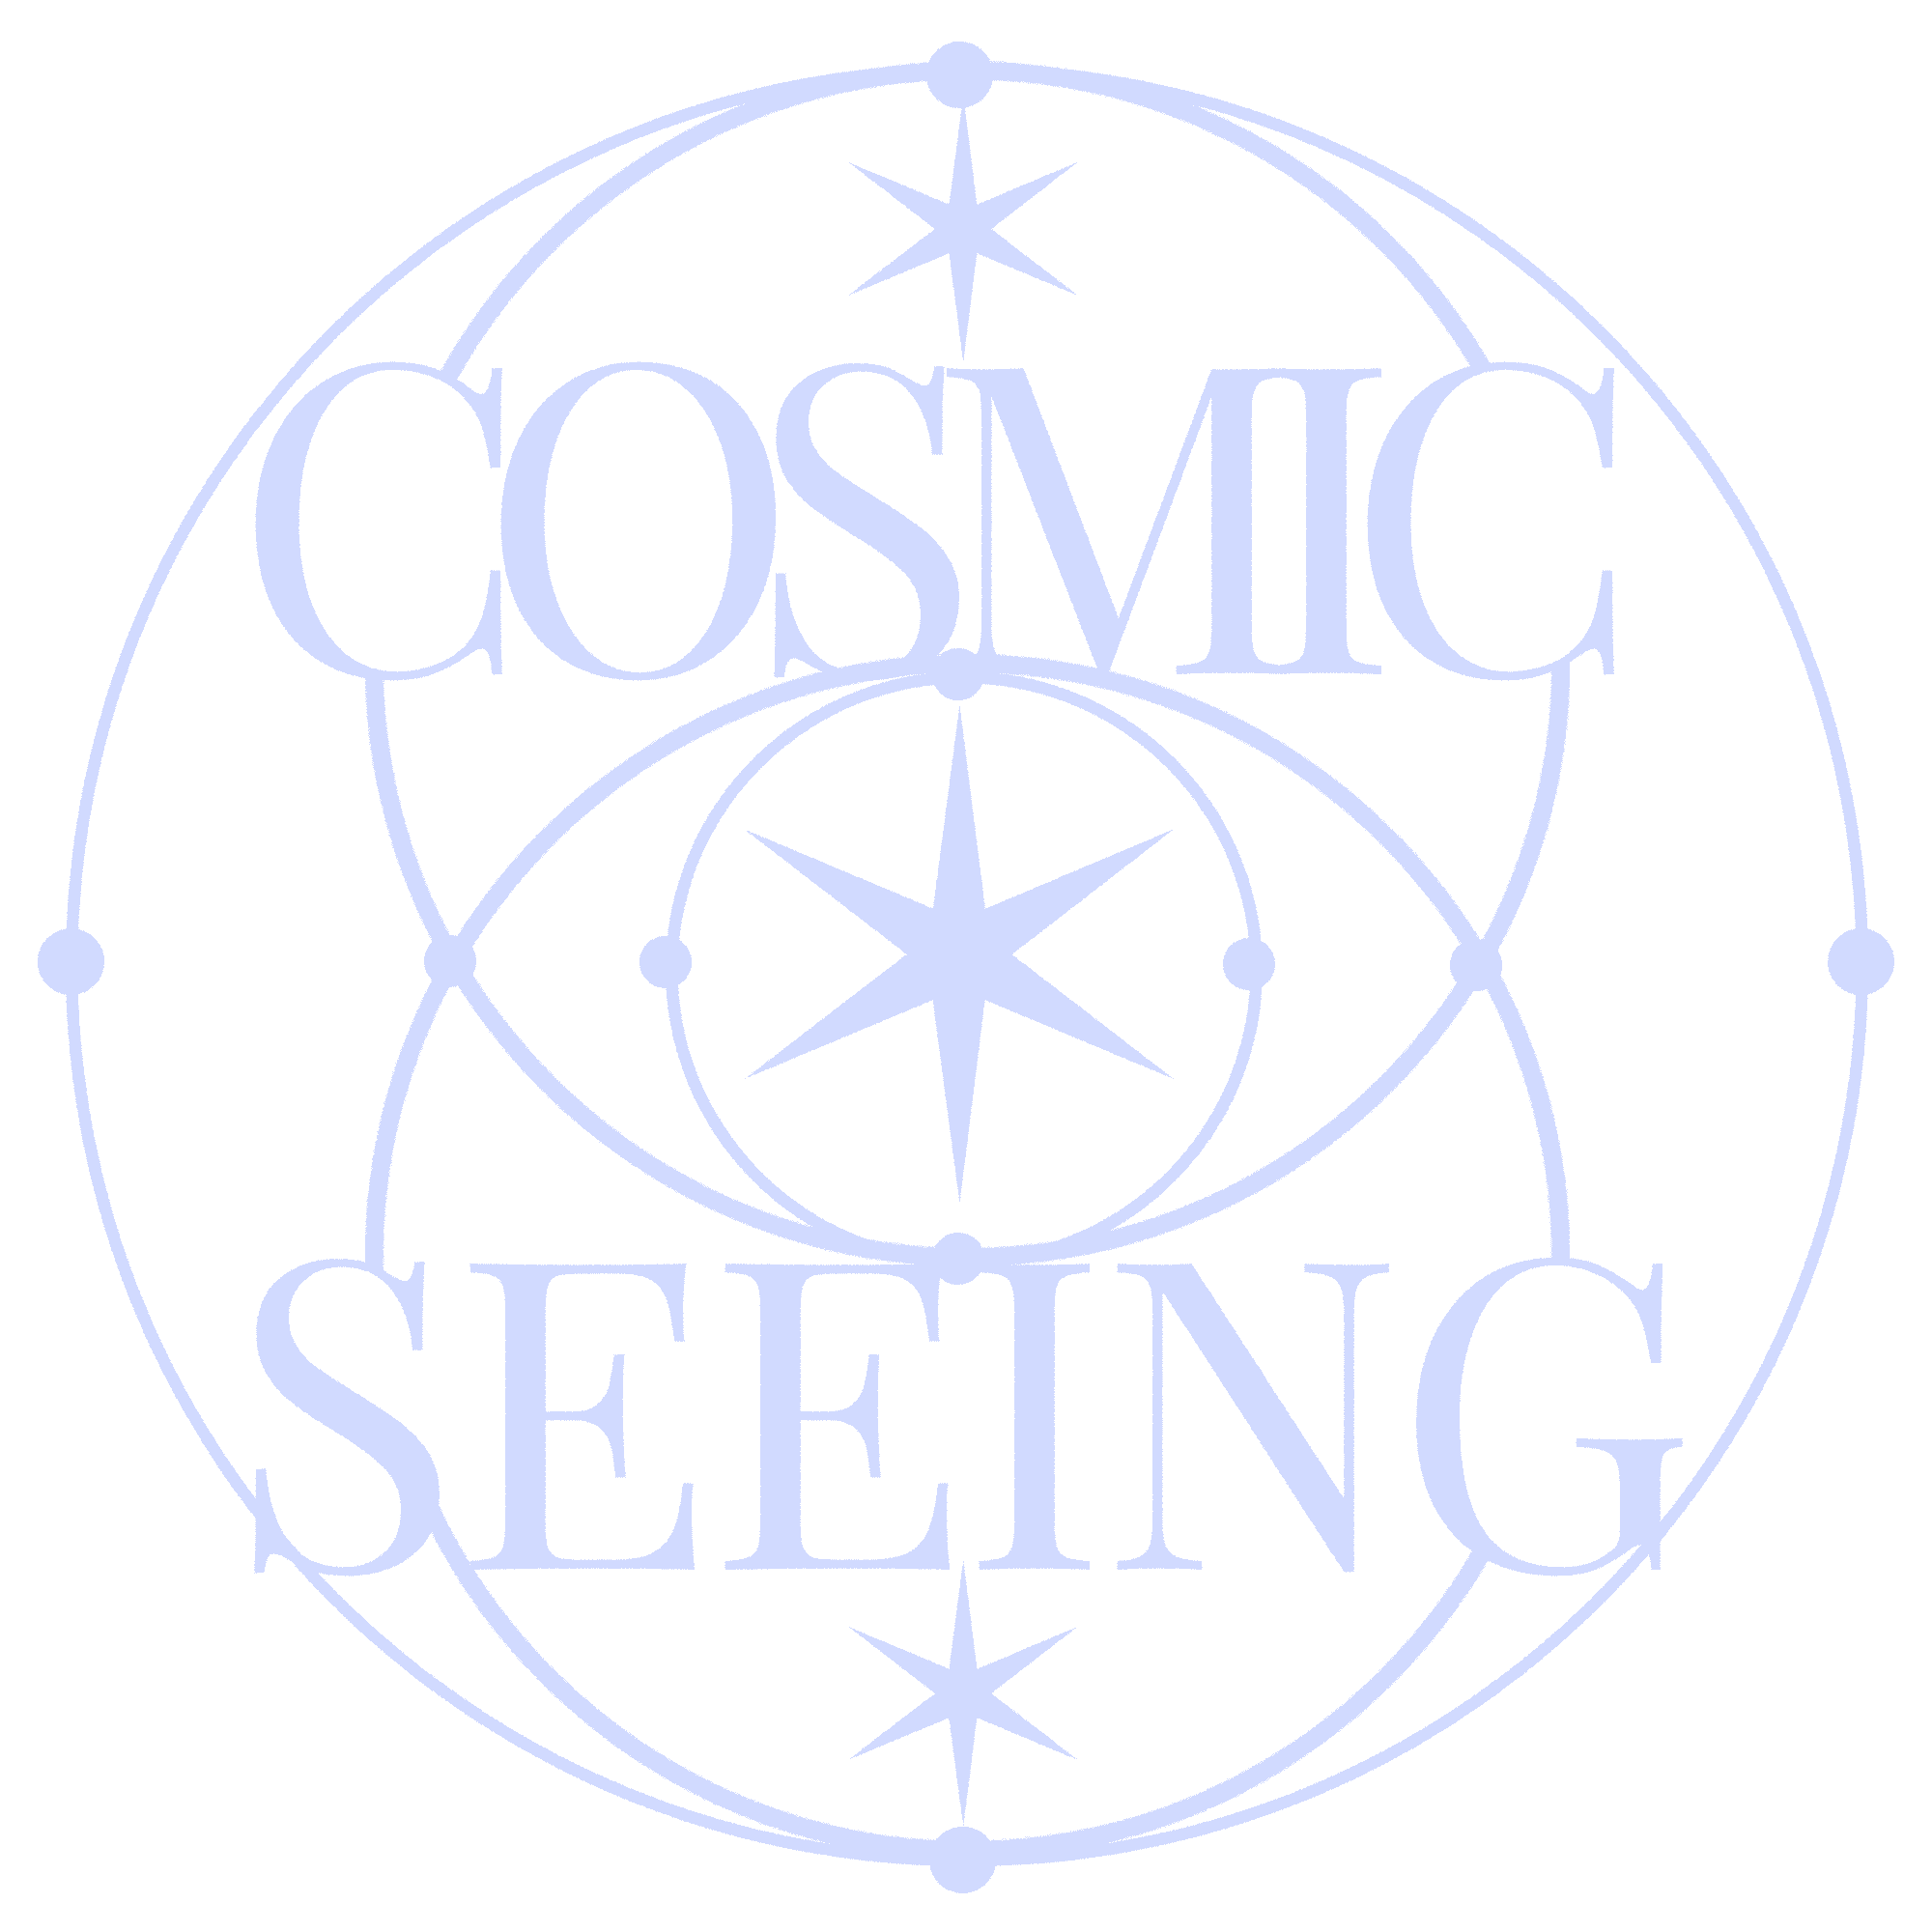 Cosmic Seeing